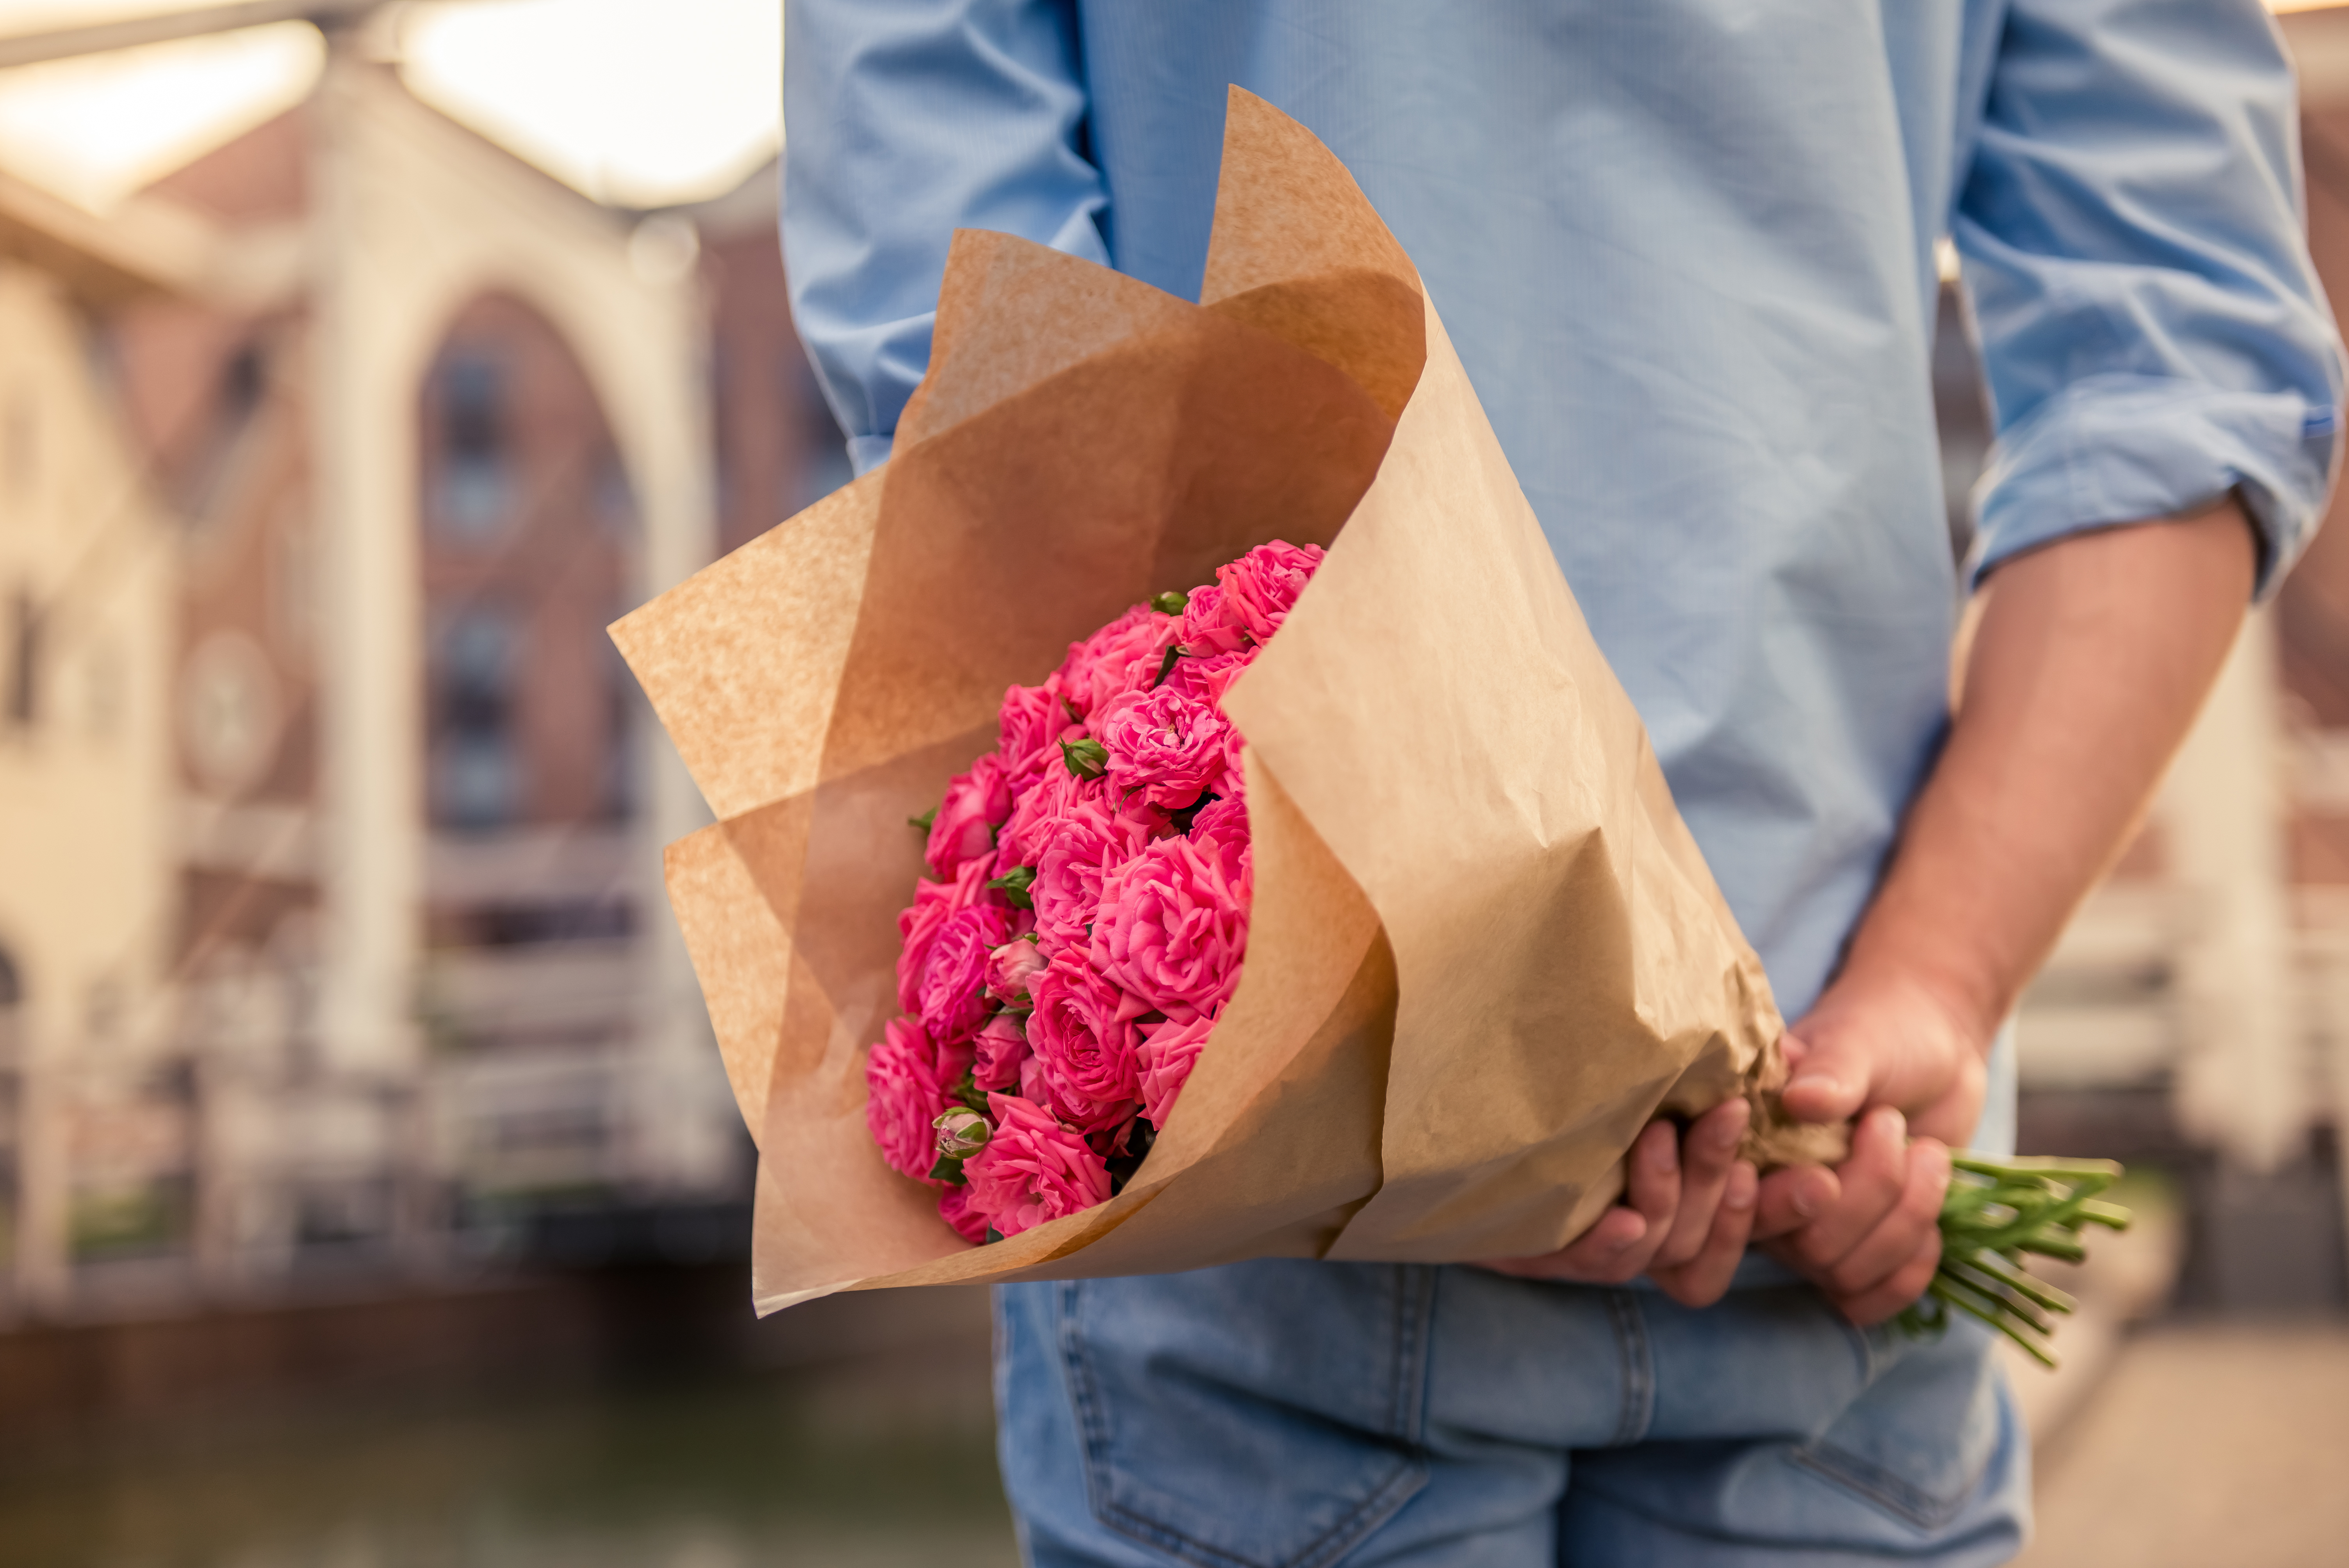 Un bărbat a fost arestat, după ce i-a trimis fostei iubite un buchet de trandafiri în care se afla o bombă: „A explodat”